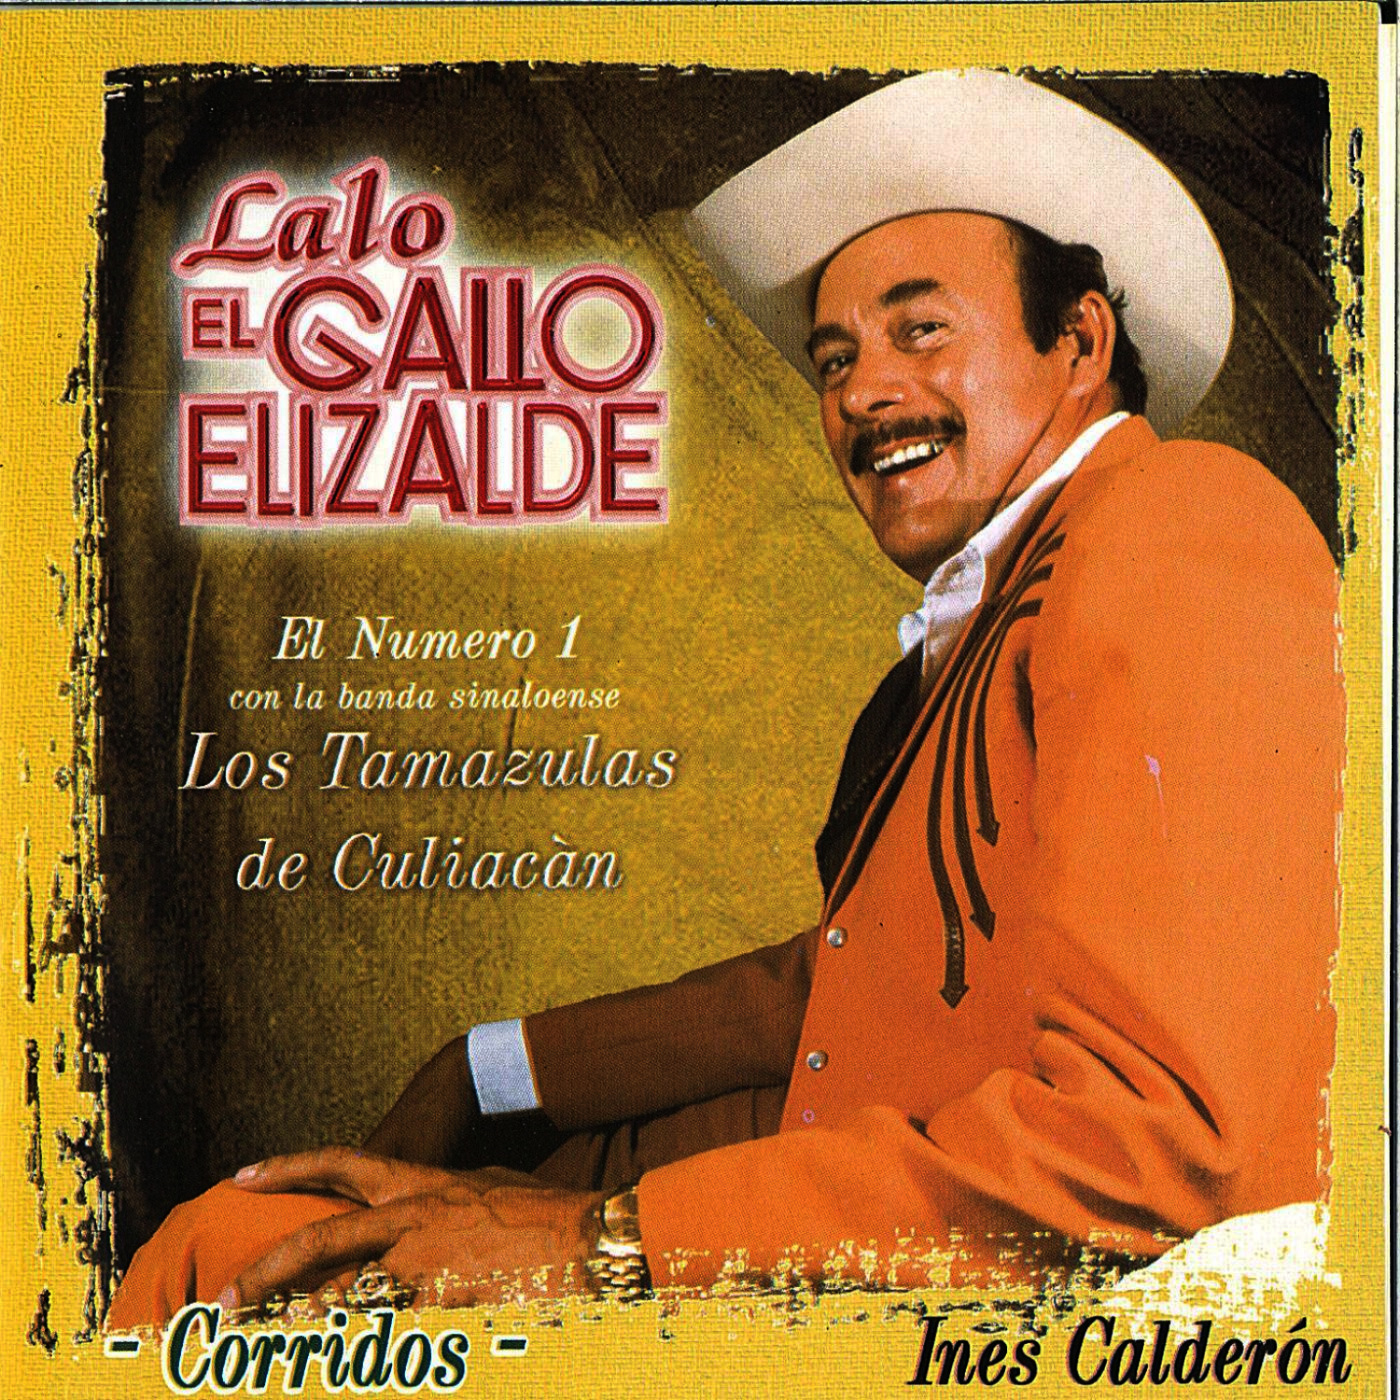 Mis Discografias Discografia Lalo El Gallo Elizalde - www.vrogue.co